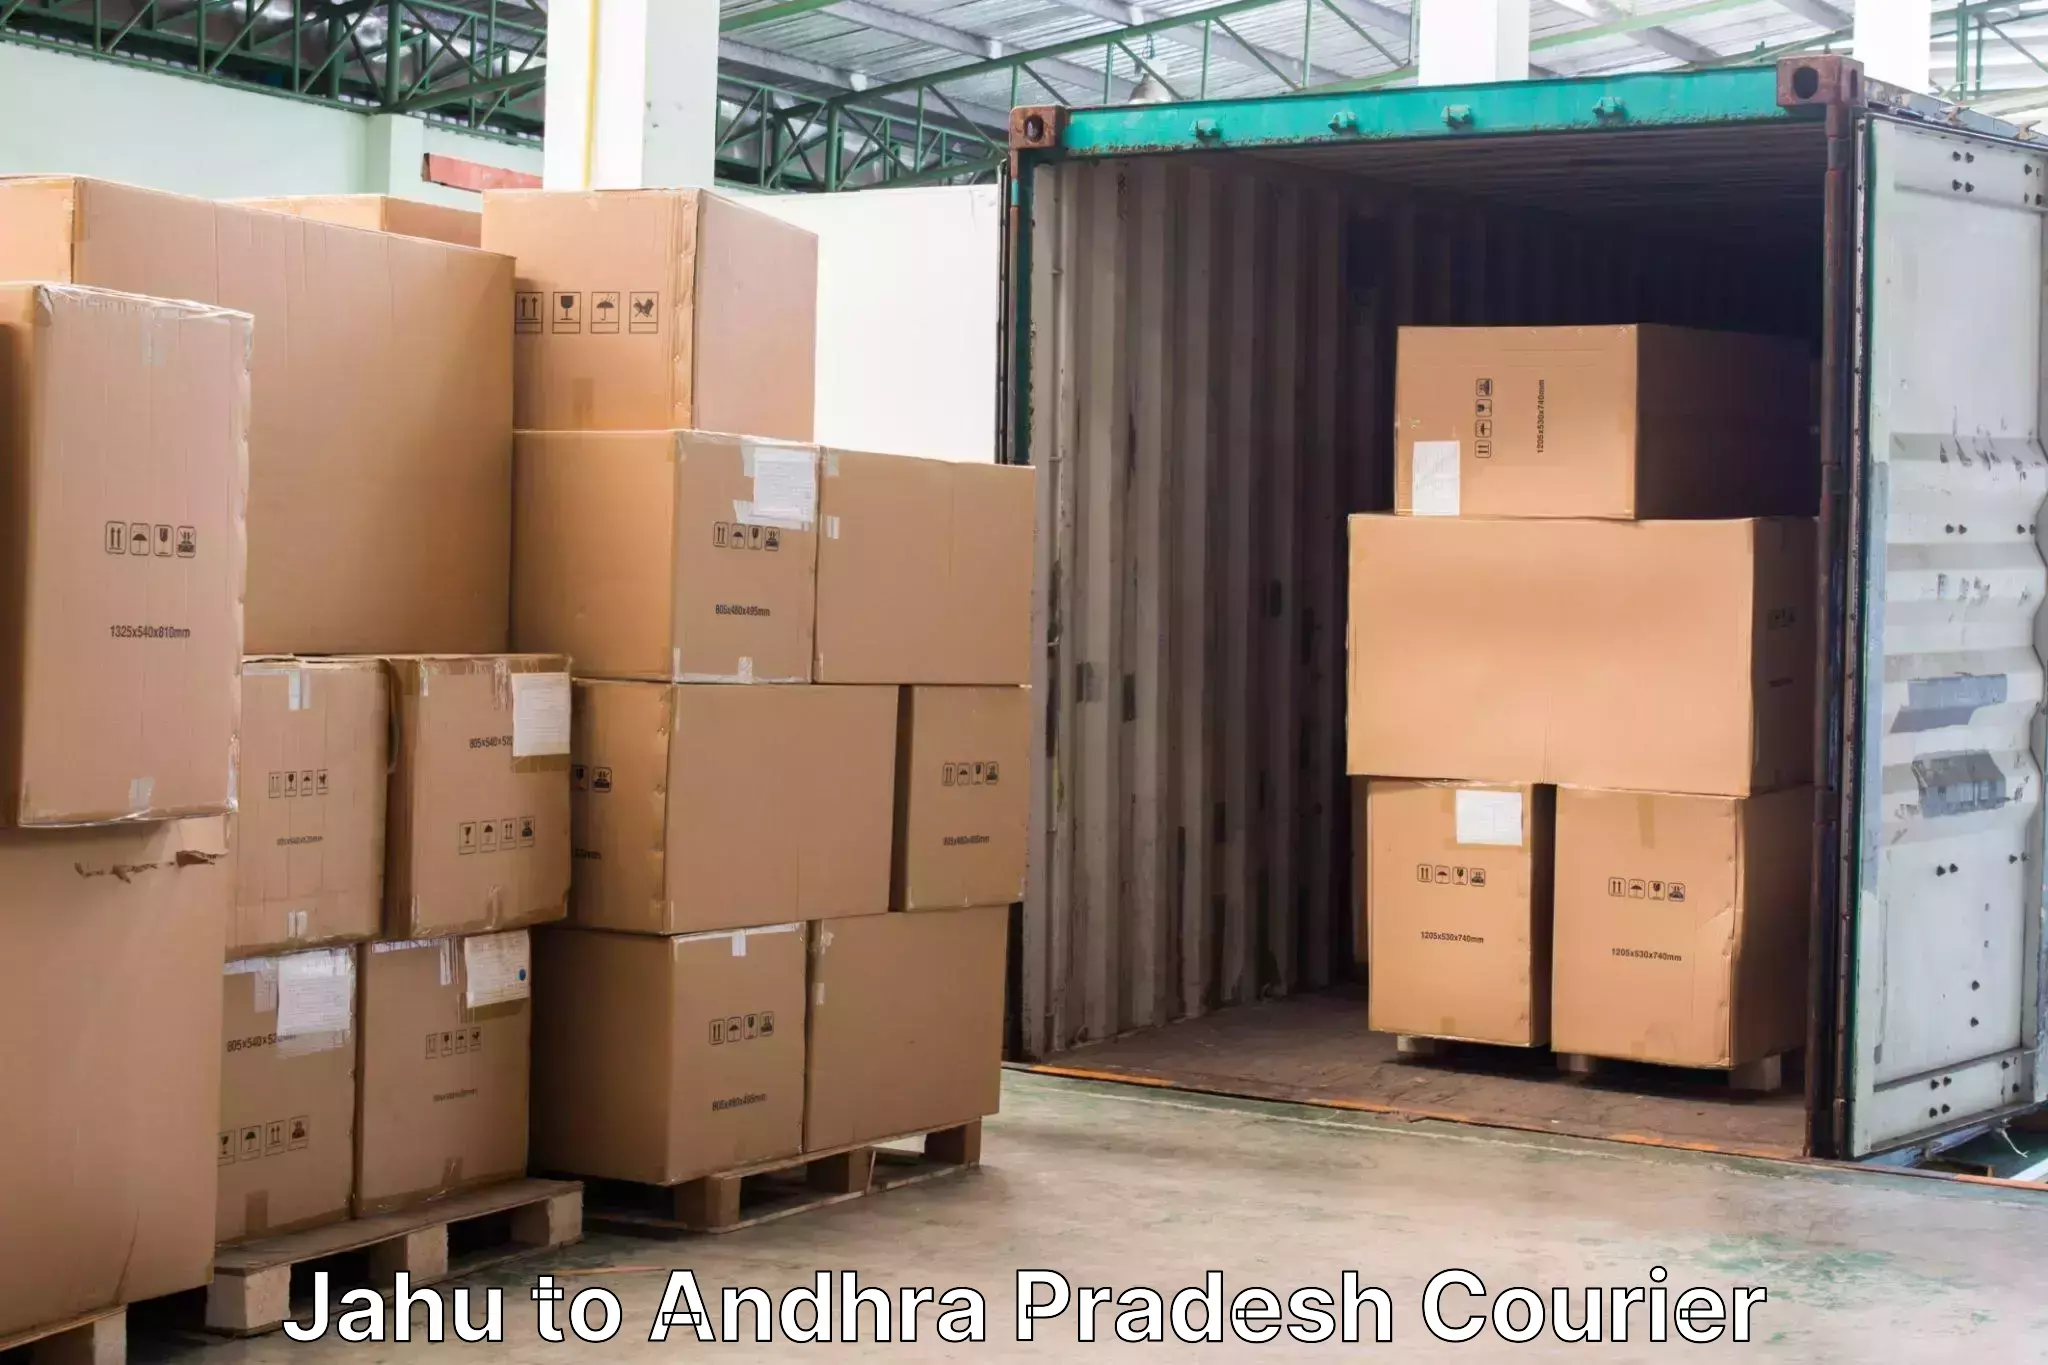 Baggage shipping calculator Jahu to Andhra Pradesh